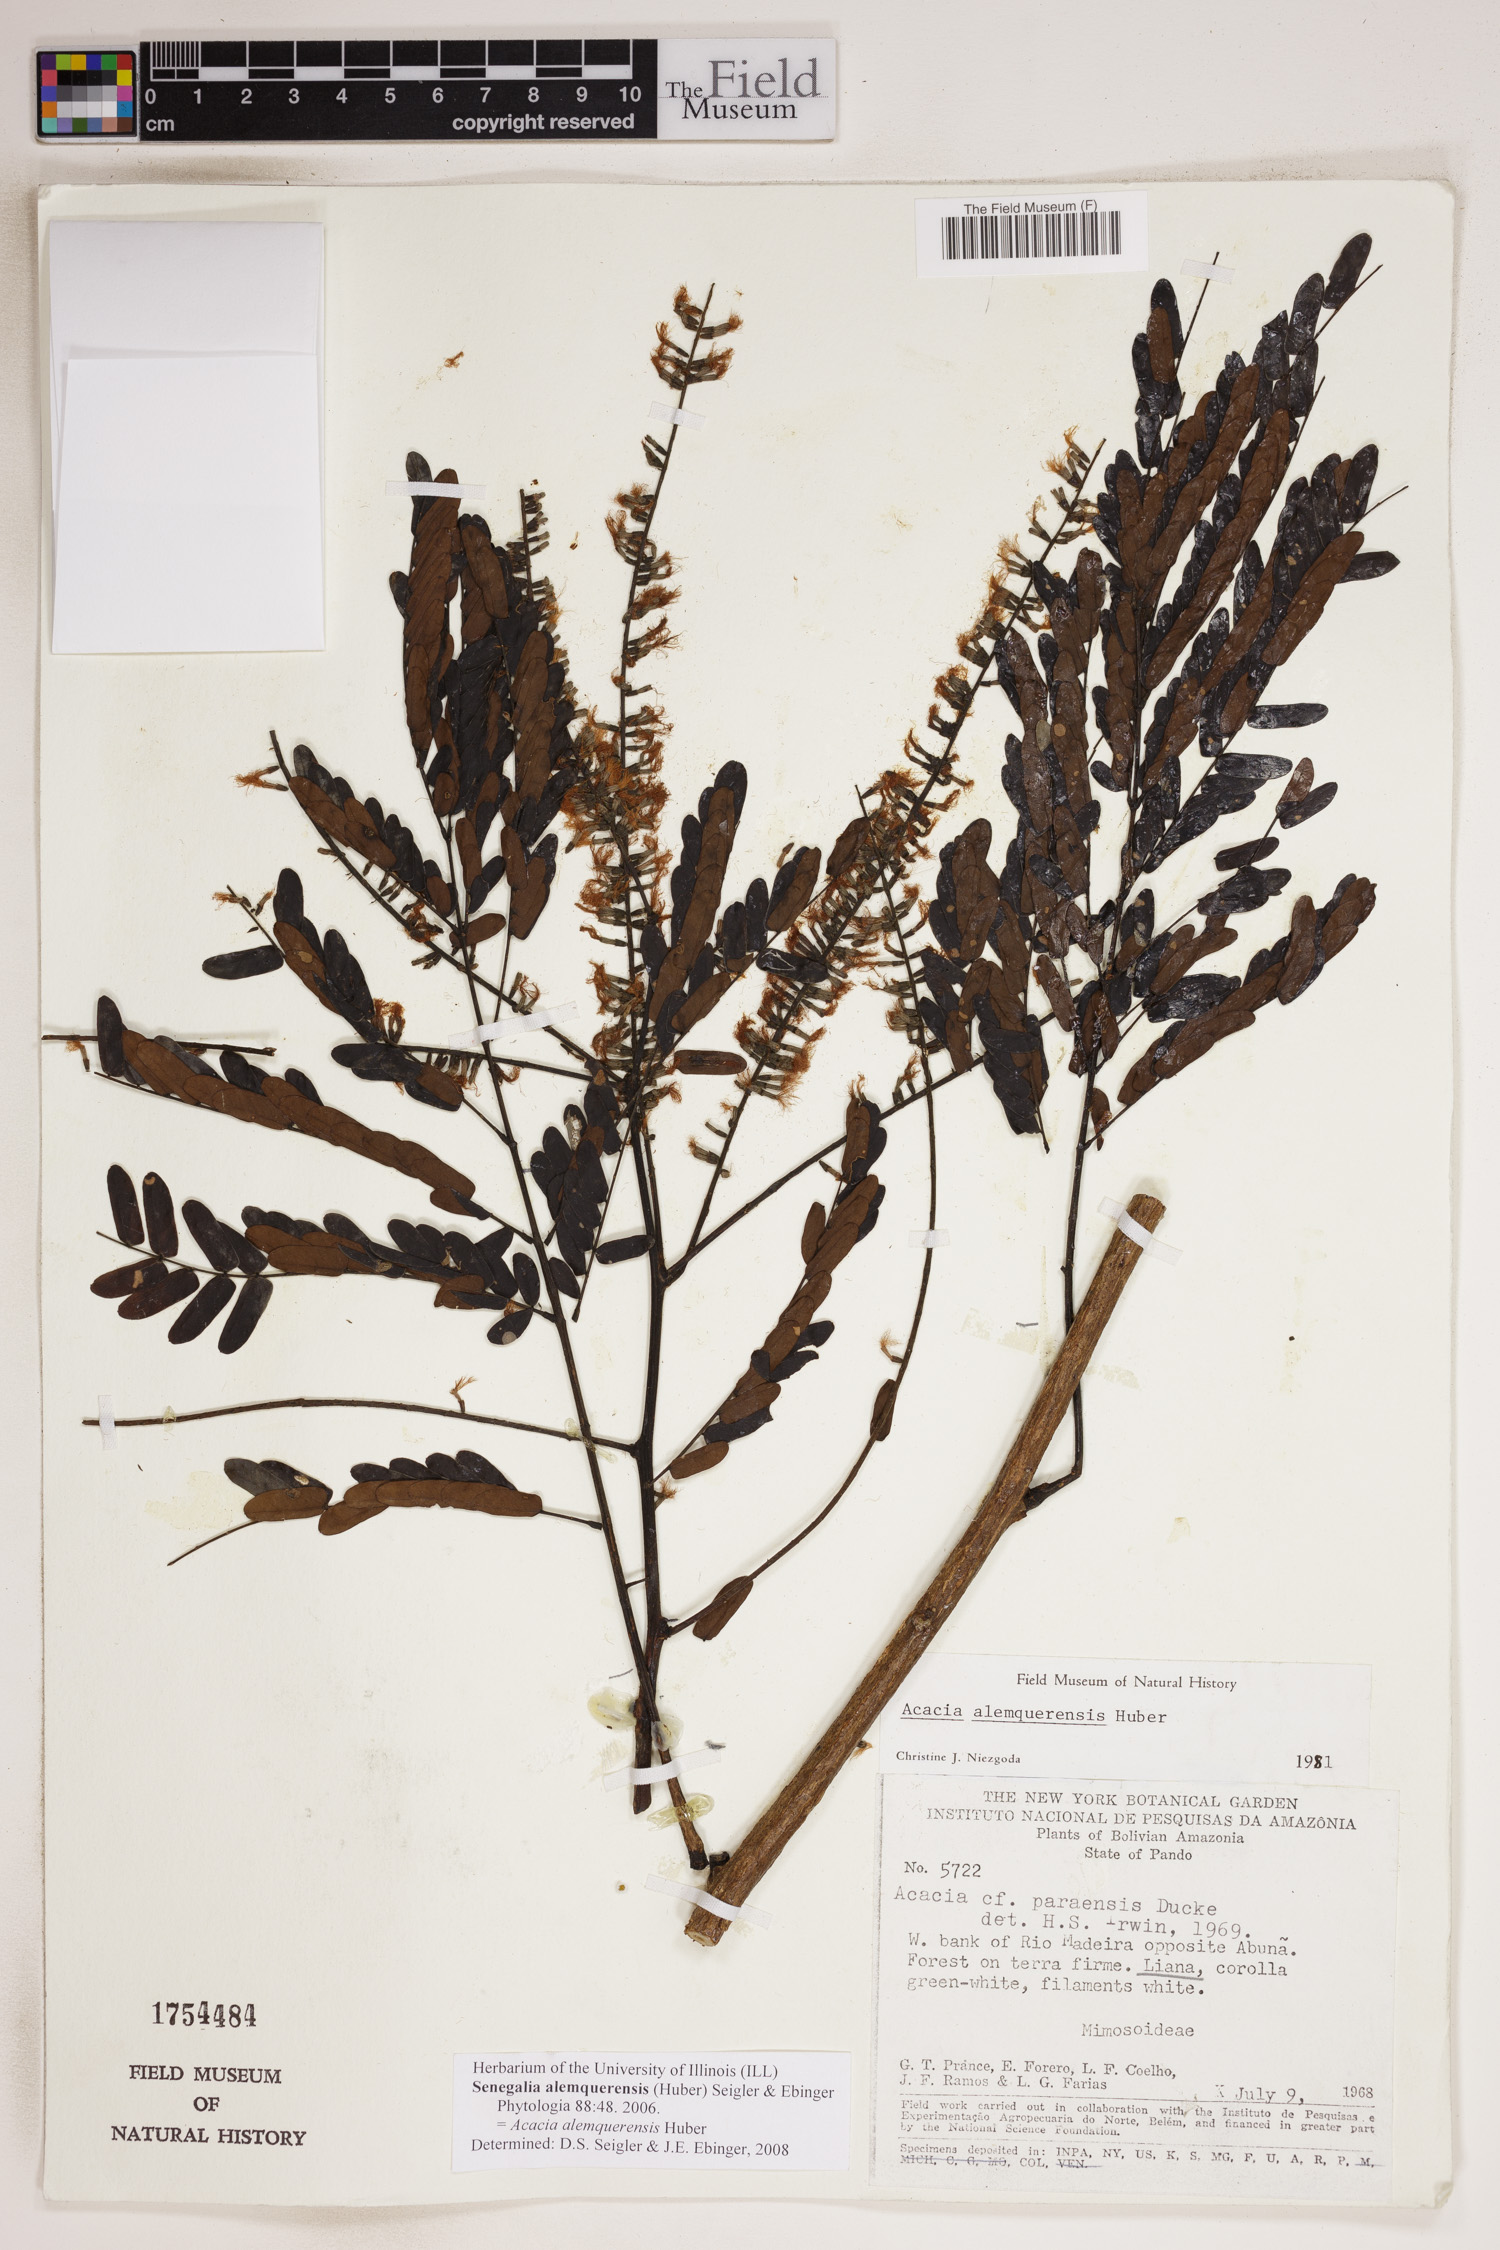 Senegalia alemquerensis image